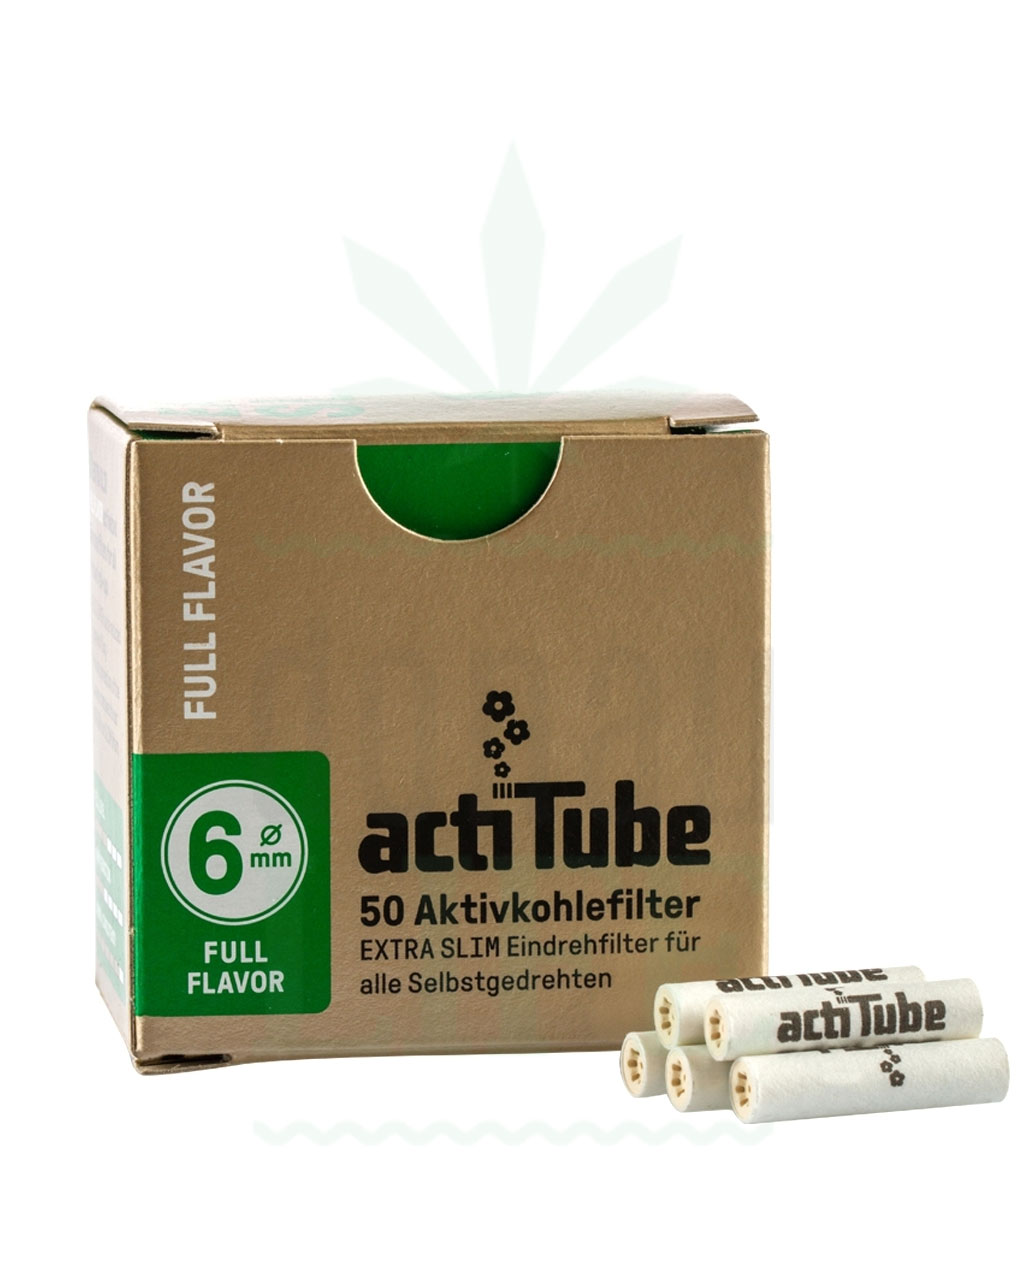 ACTITUBE Slim Aktivkohlefilter Extra Slim 50 Stück, Full Flavor